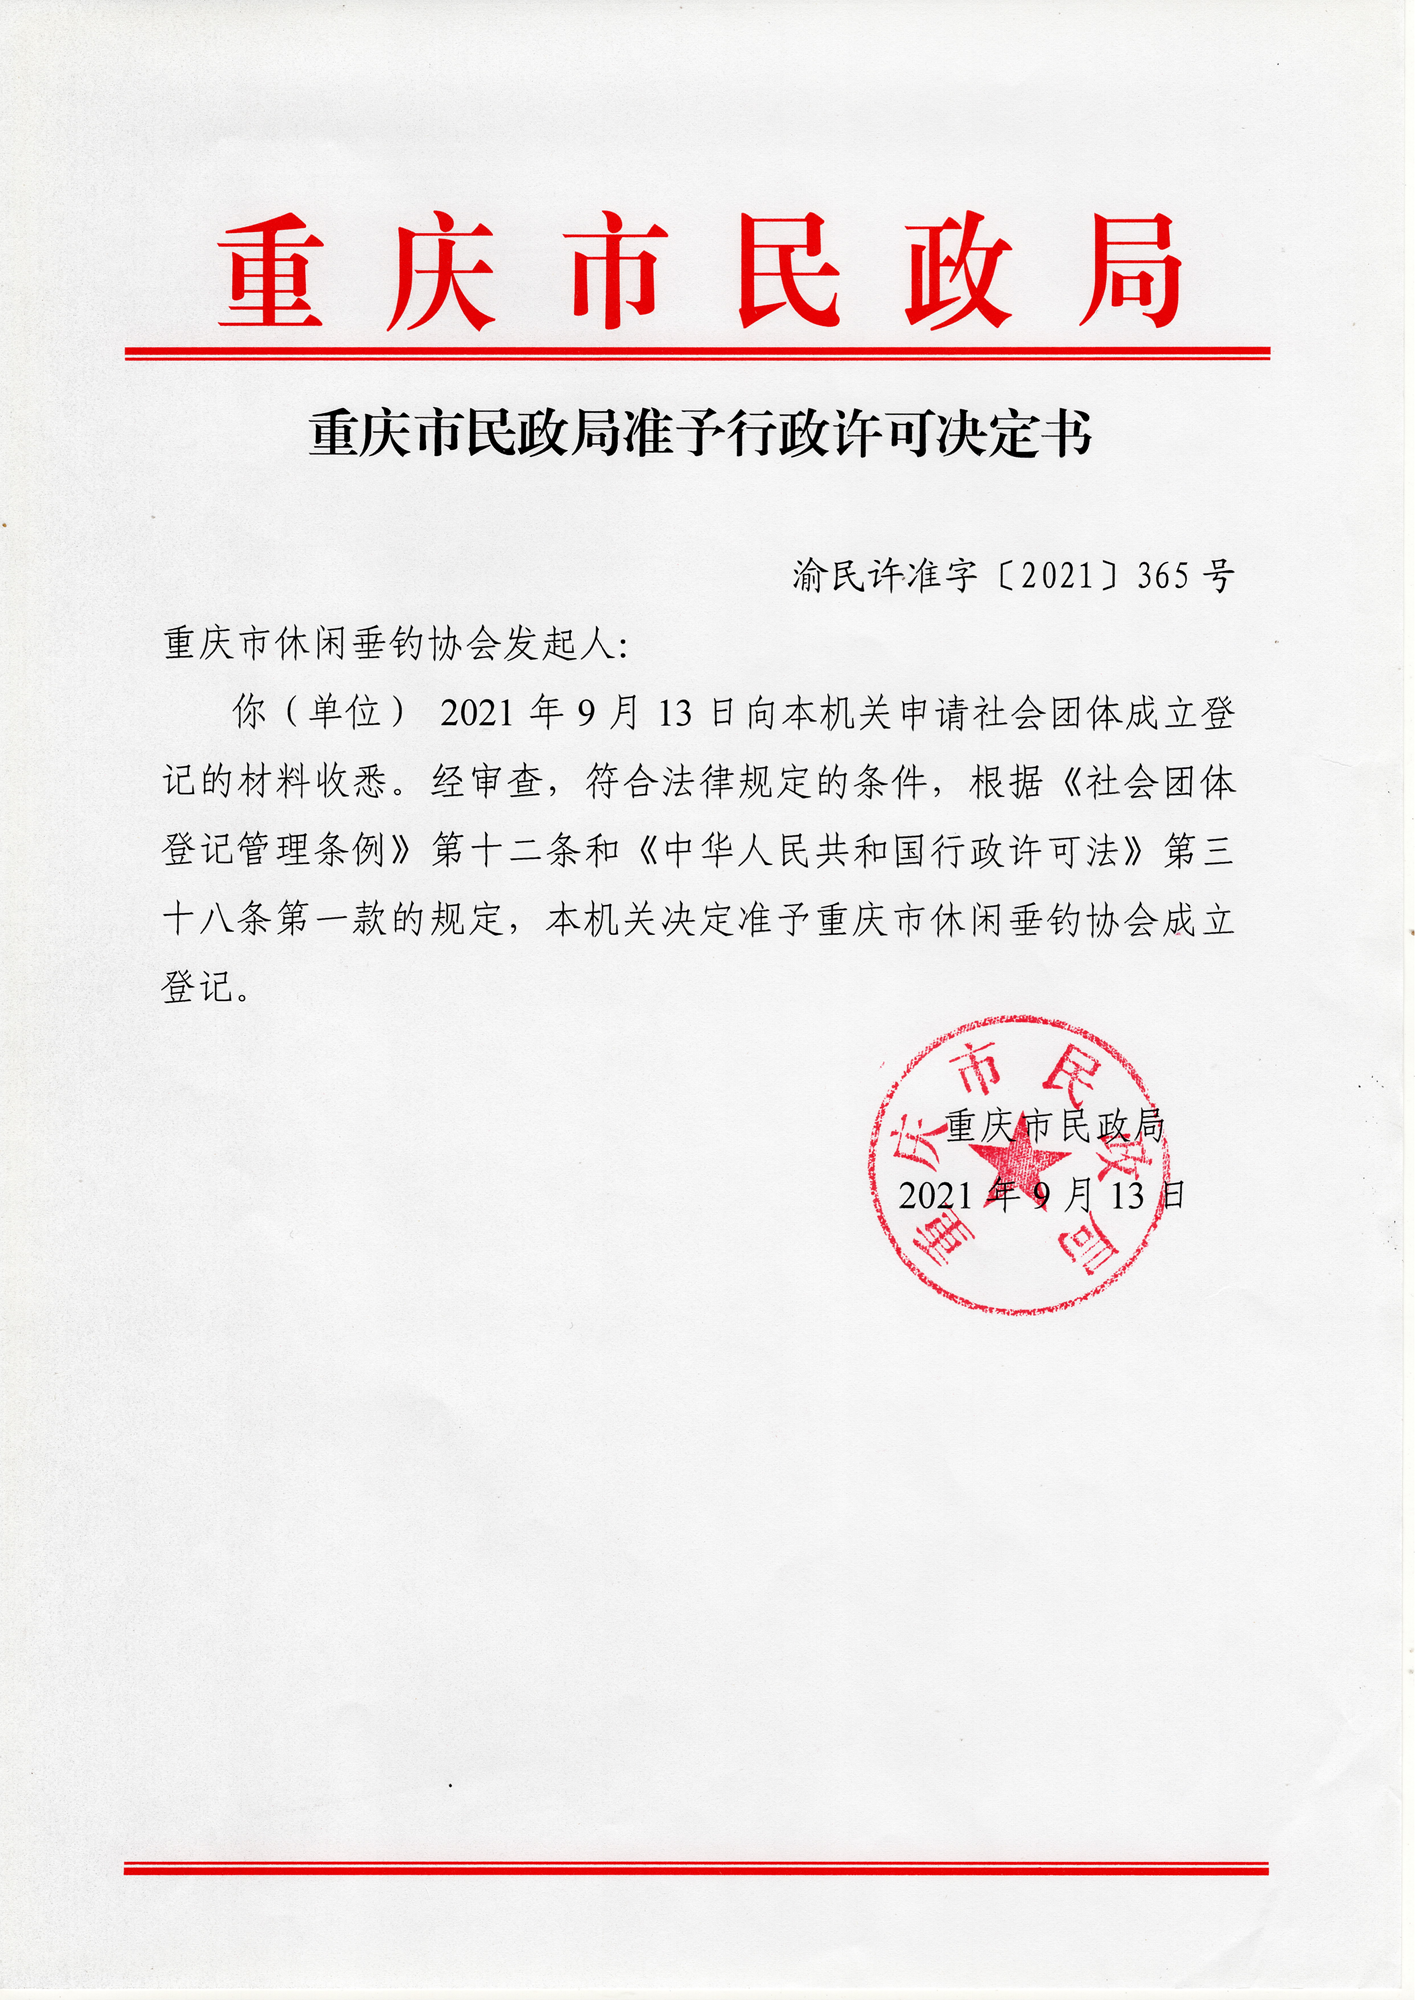 重庆市民政局准予行政许可决定书 渝民许准字〔2021〕365号_00_副本.png